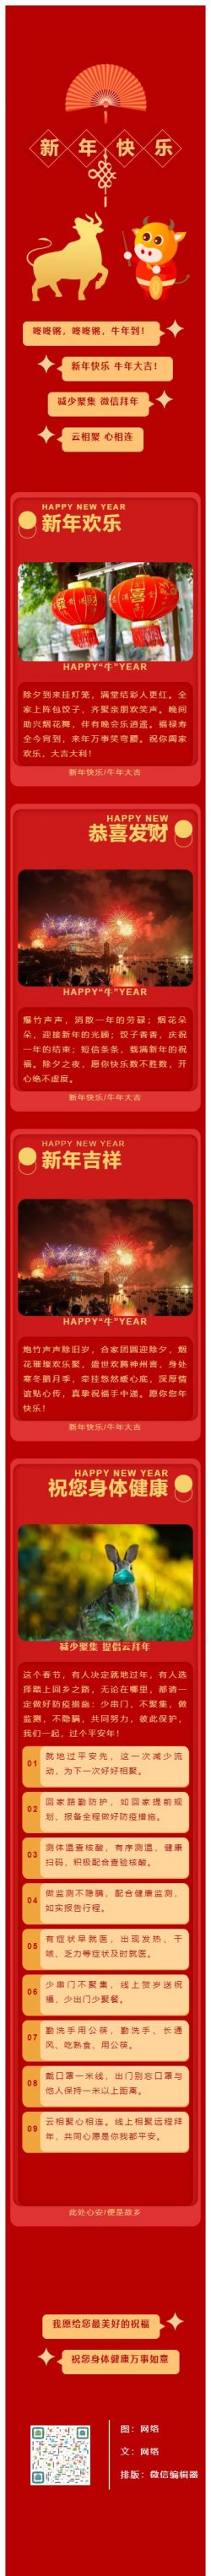 元宵节中国的传统节日微信公众号模板推文素材红色灯笼